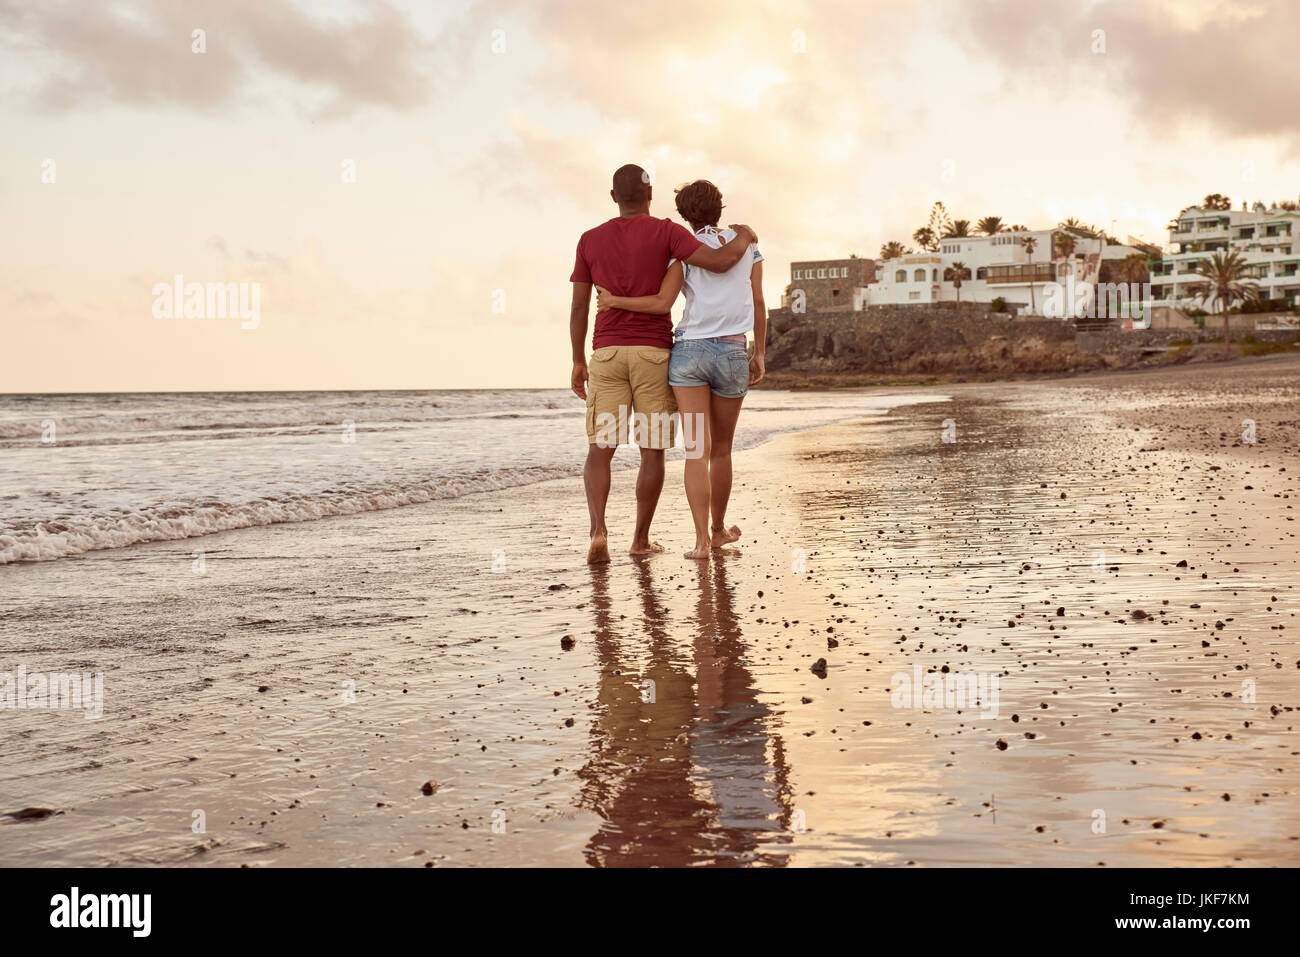 Spanien, Kanarische Inseln, Gran Canaria, zurück Blick auf Paare, die in Liebe zu Fuß am Strand Stockfoto